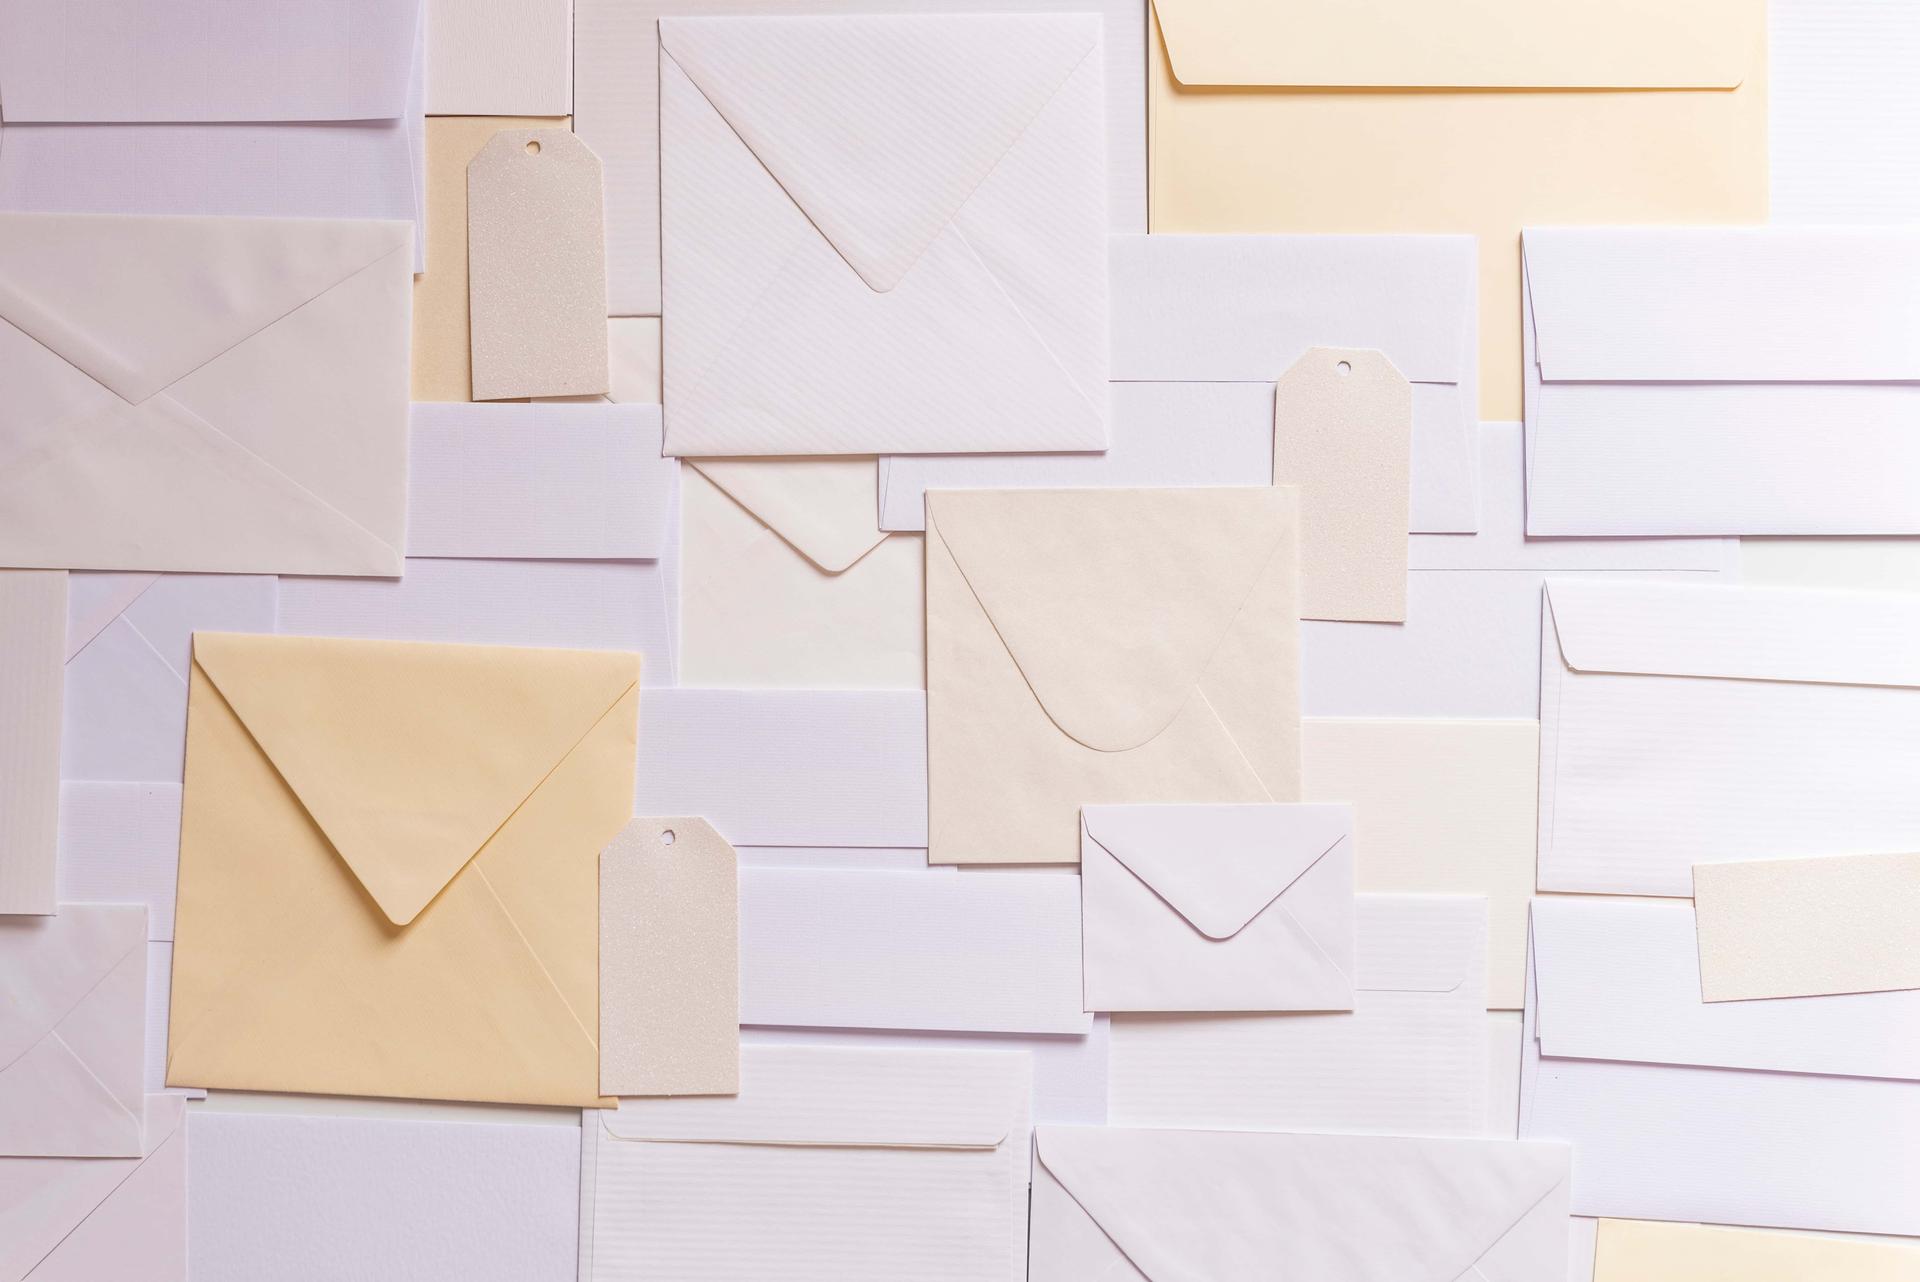 Sending Mass Mail from Google Sheet using Scripts